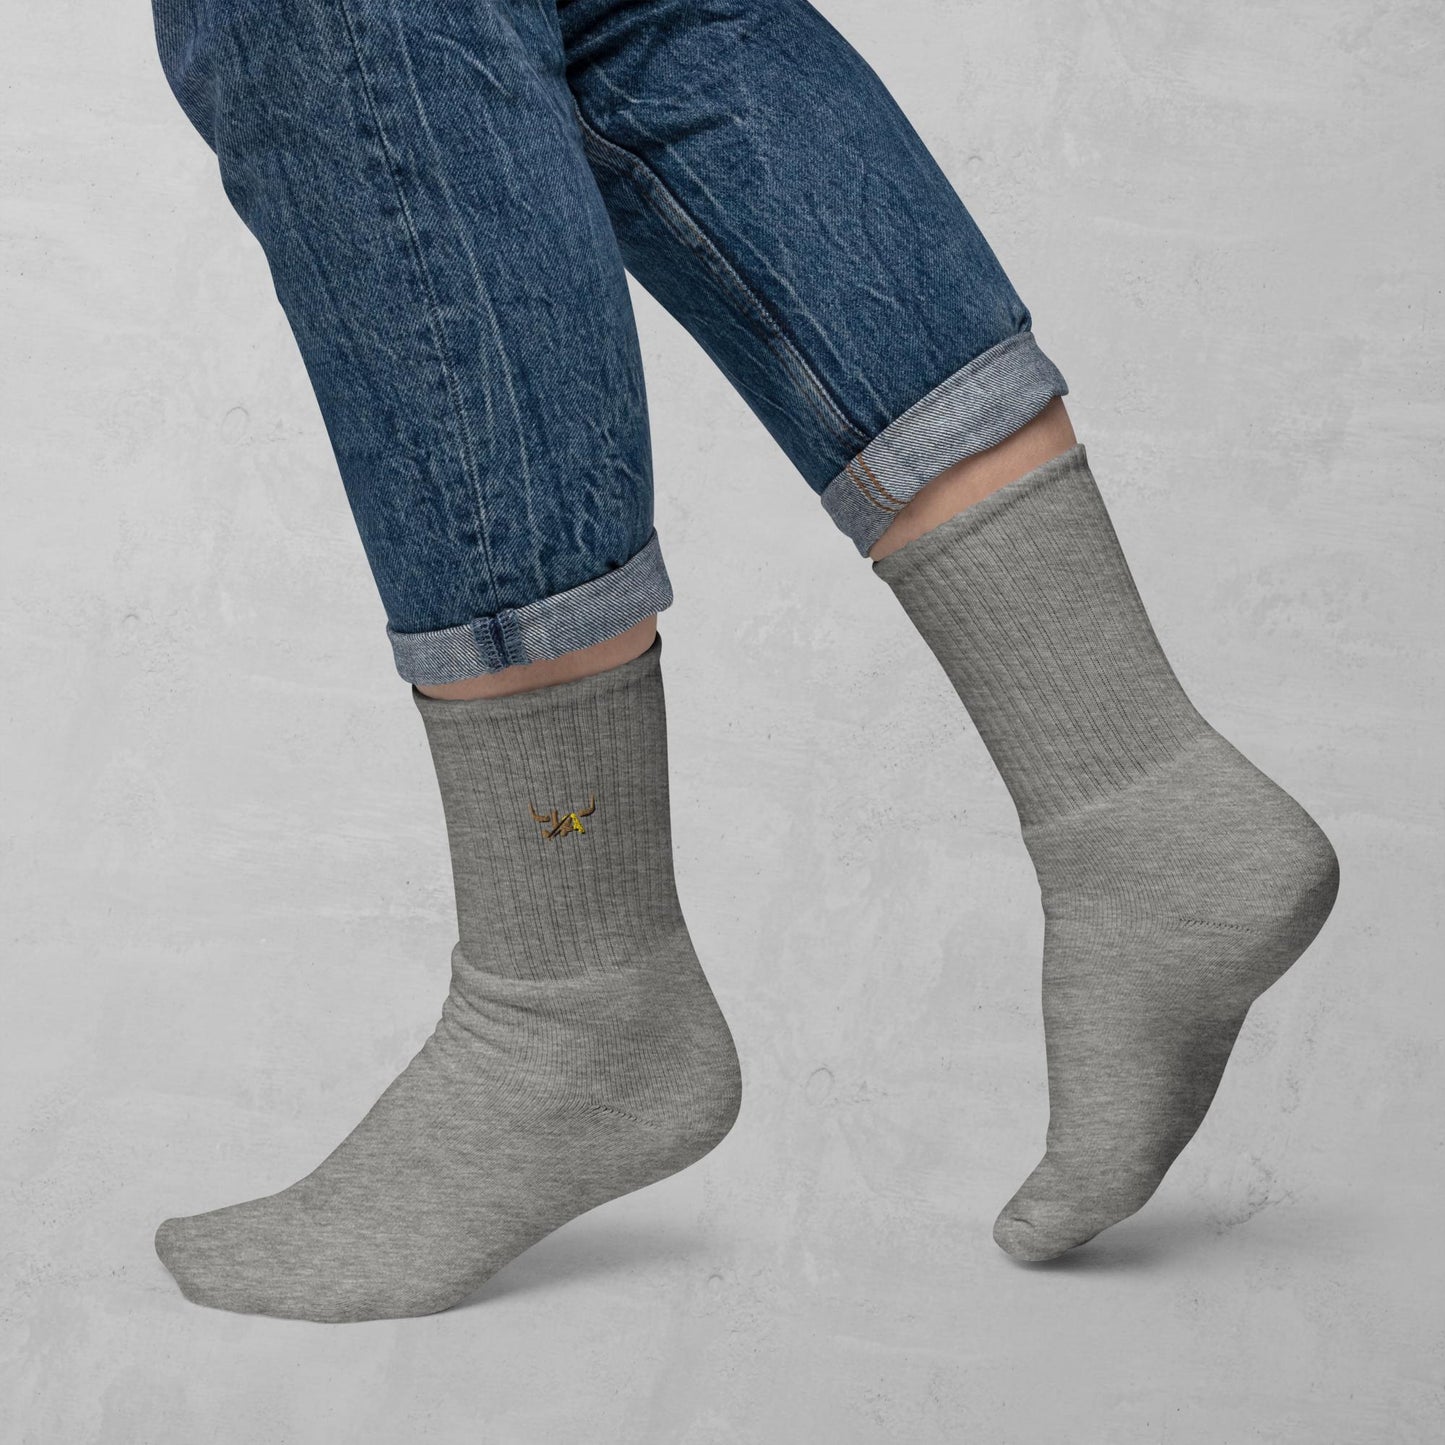 J.A Women's socks